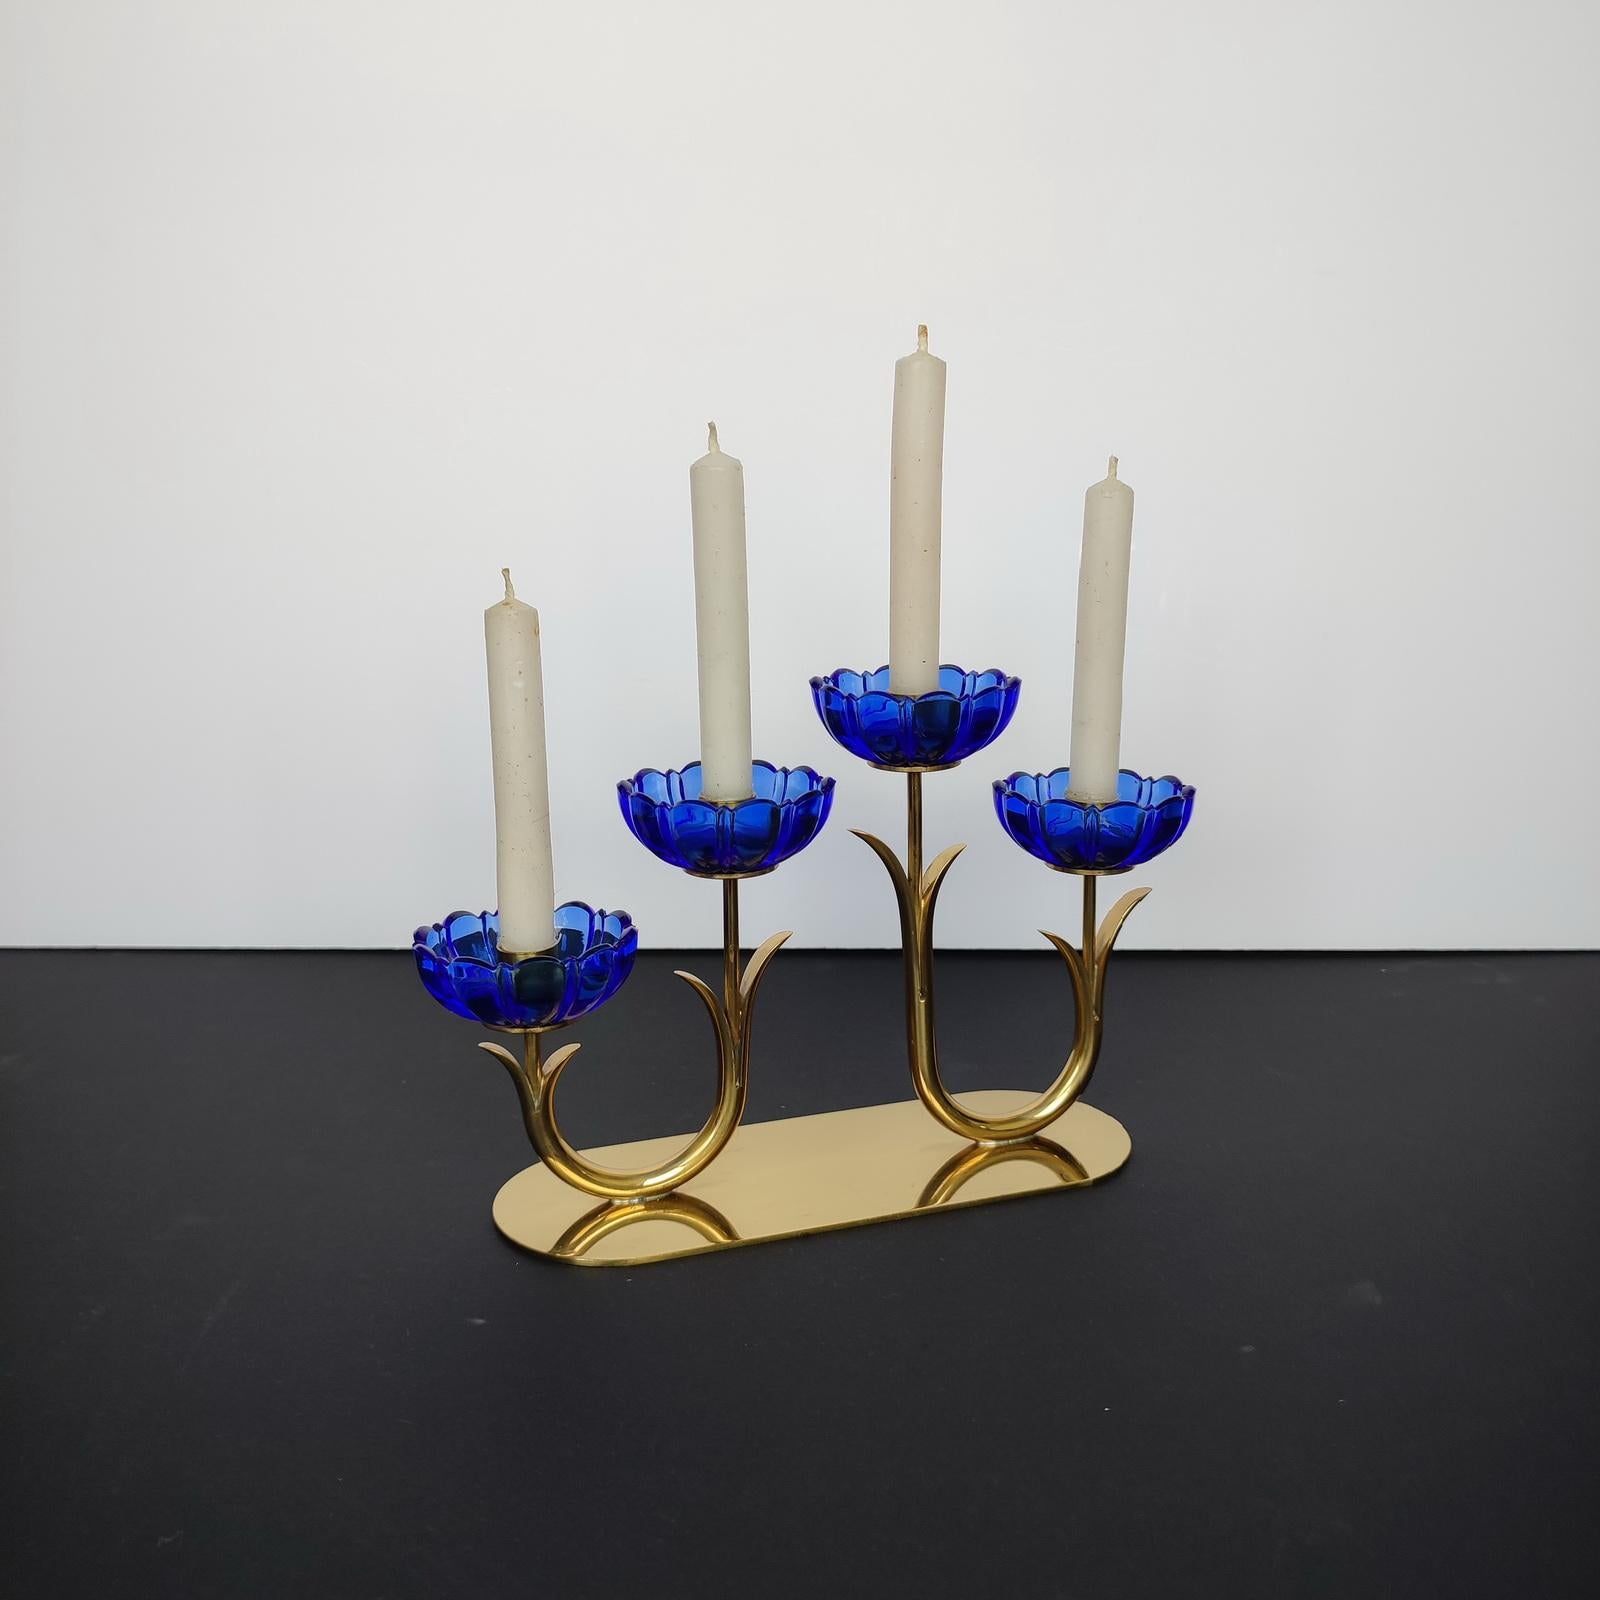 Gunnar Ander für Ystad-Metall. Kerzenständer aus Messing und blauem Kunstglas in Form von Blumen. 1950s. Herstellermarke unten. In sehr gutem gebrauchten Zustand.
Abmessungen: 21 x 12,5 x 6,5 cm.
Kerzenständer mit vier Lichtern, ideal für ein